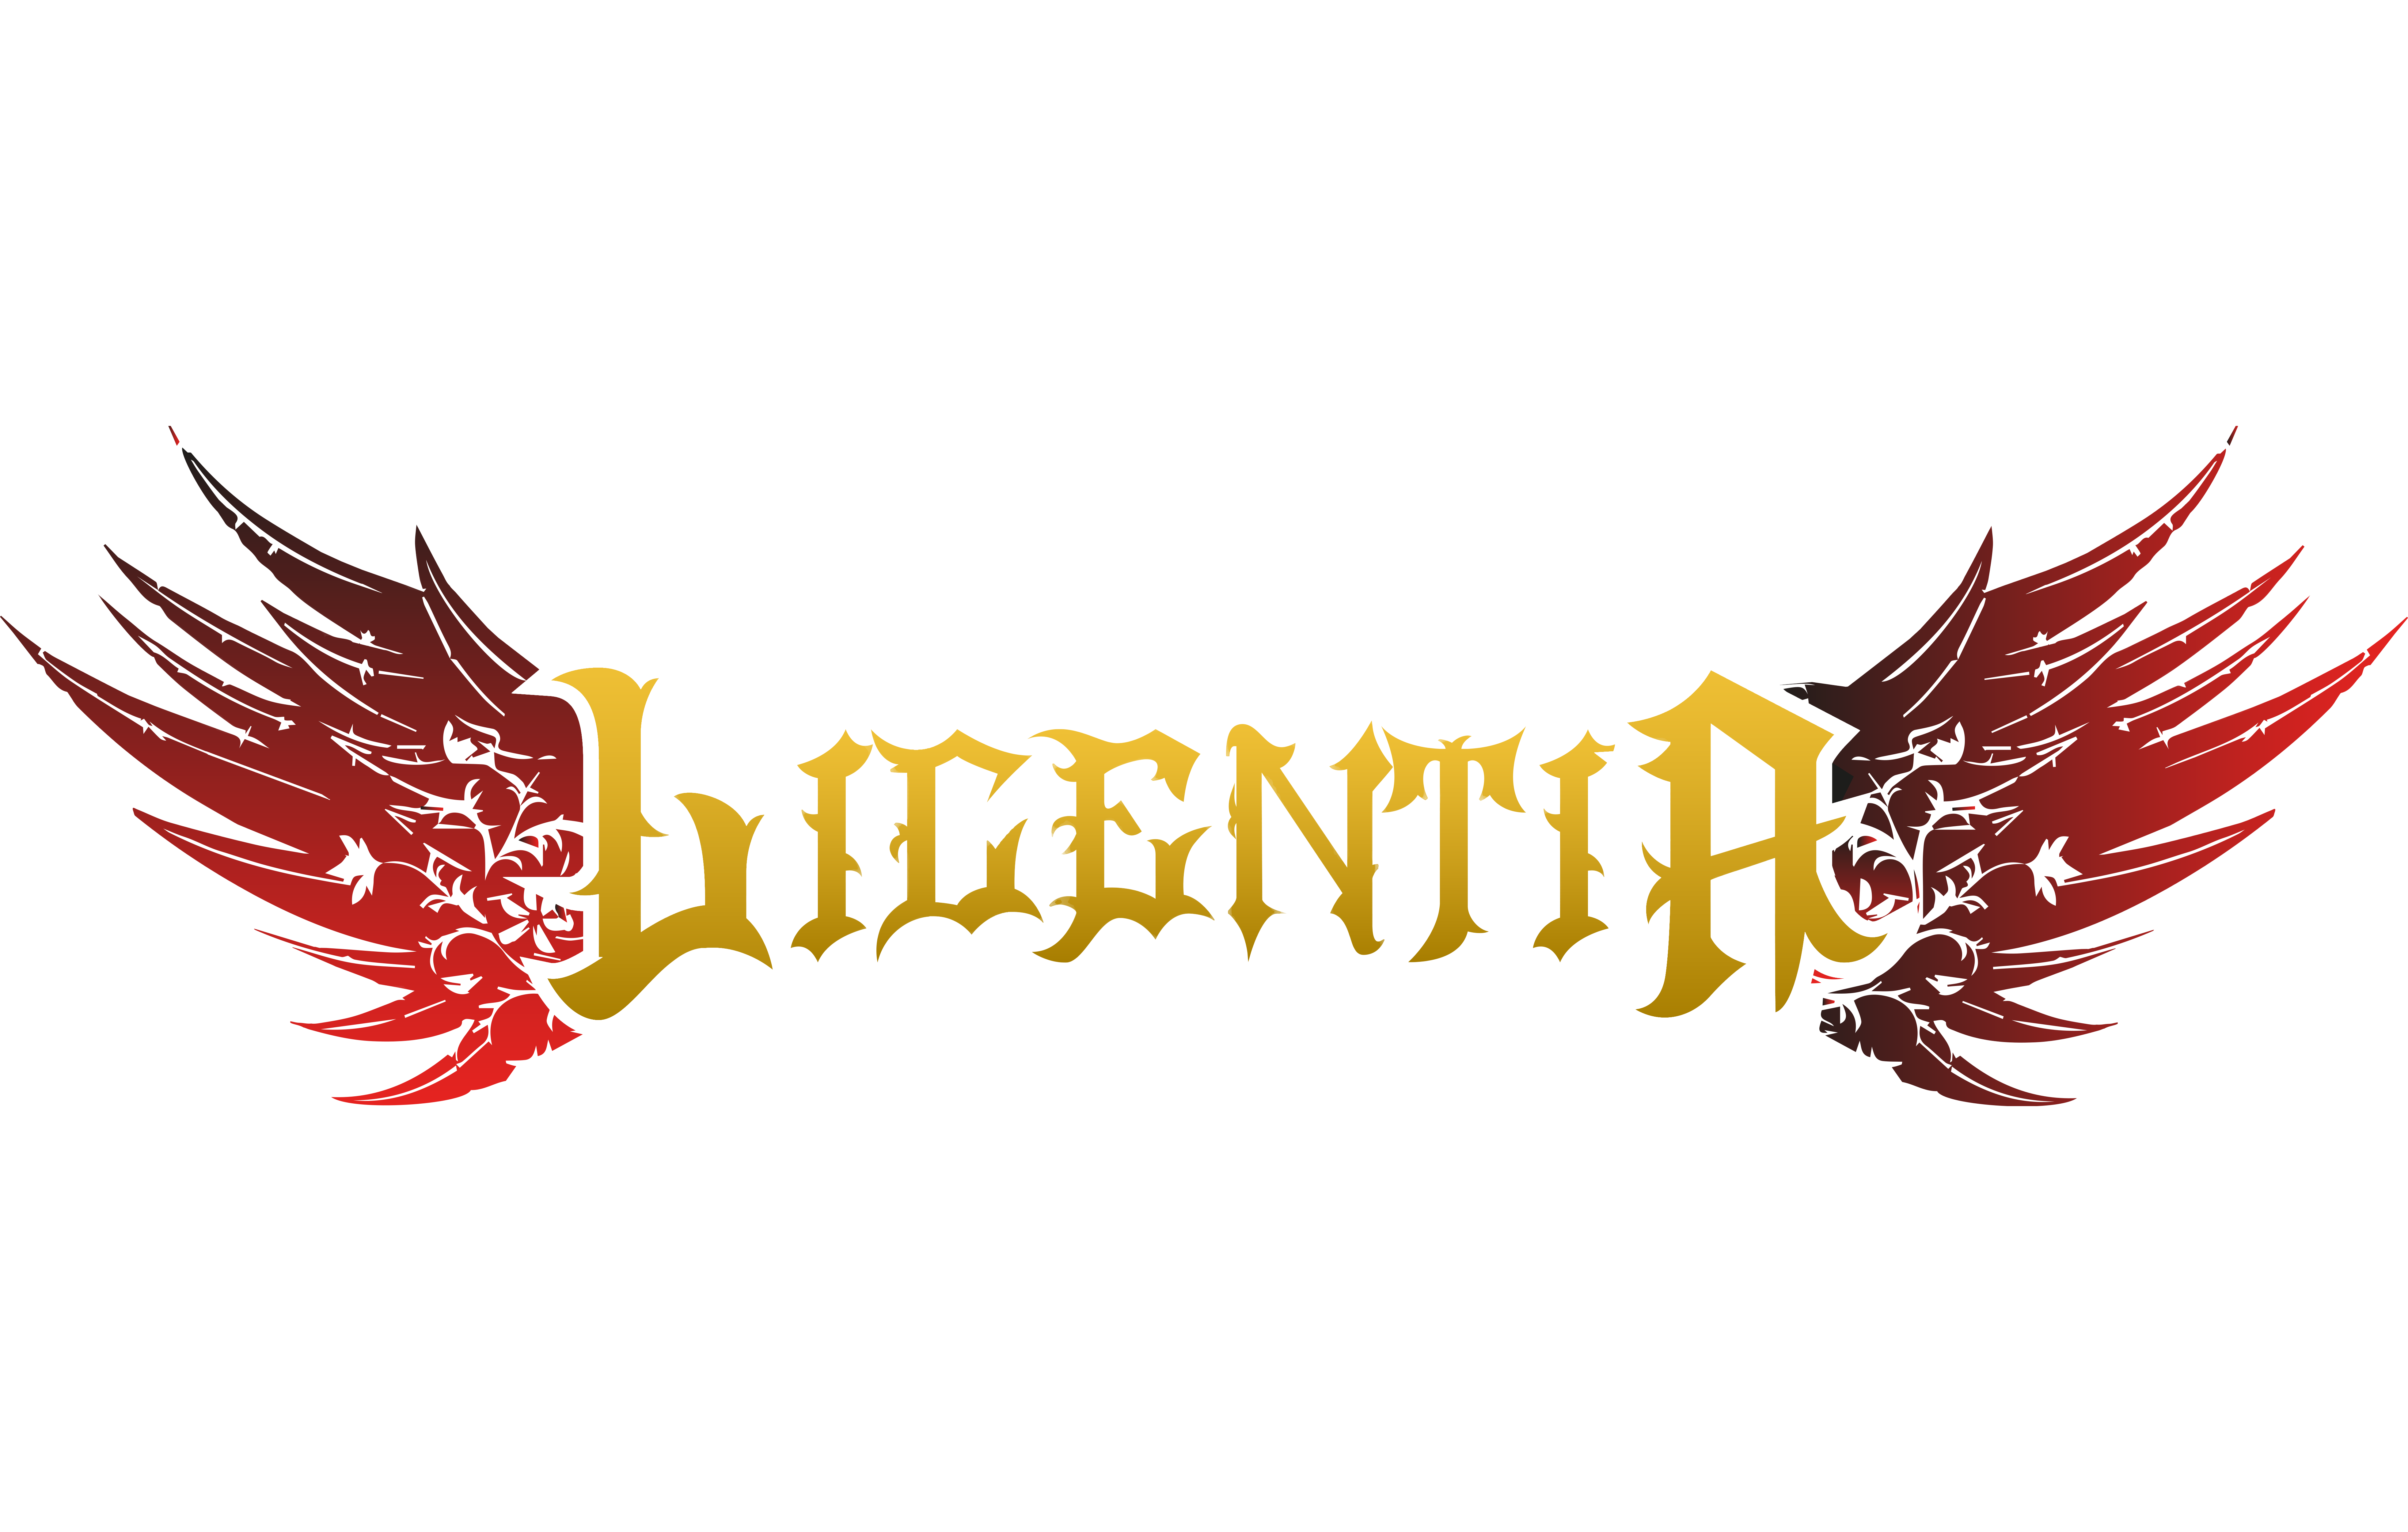 Licentia logo